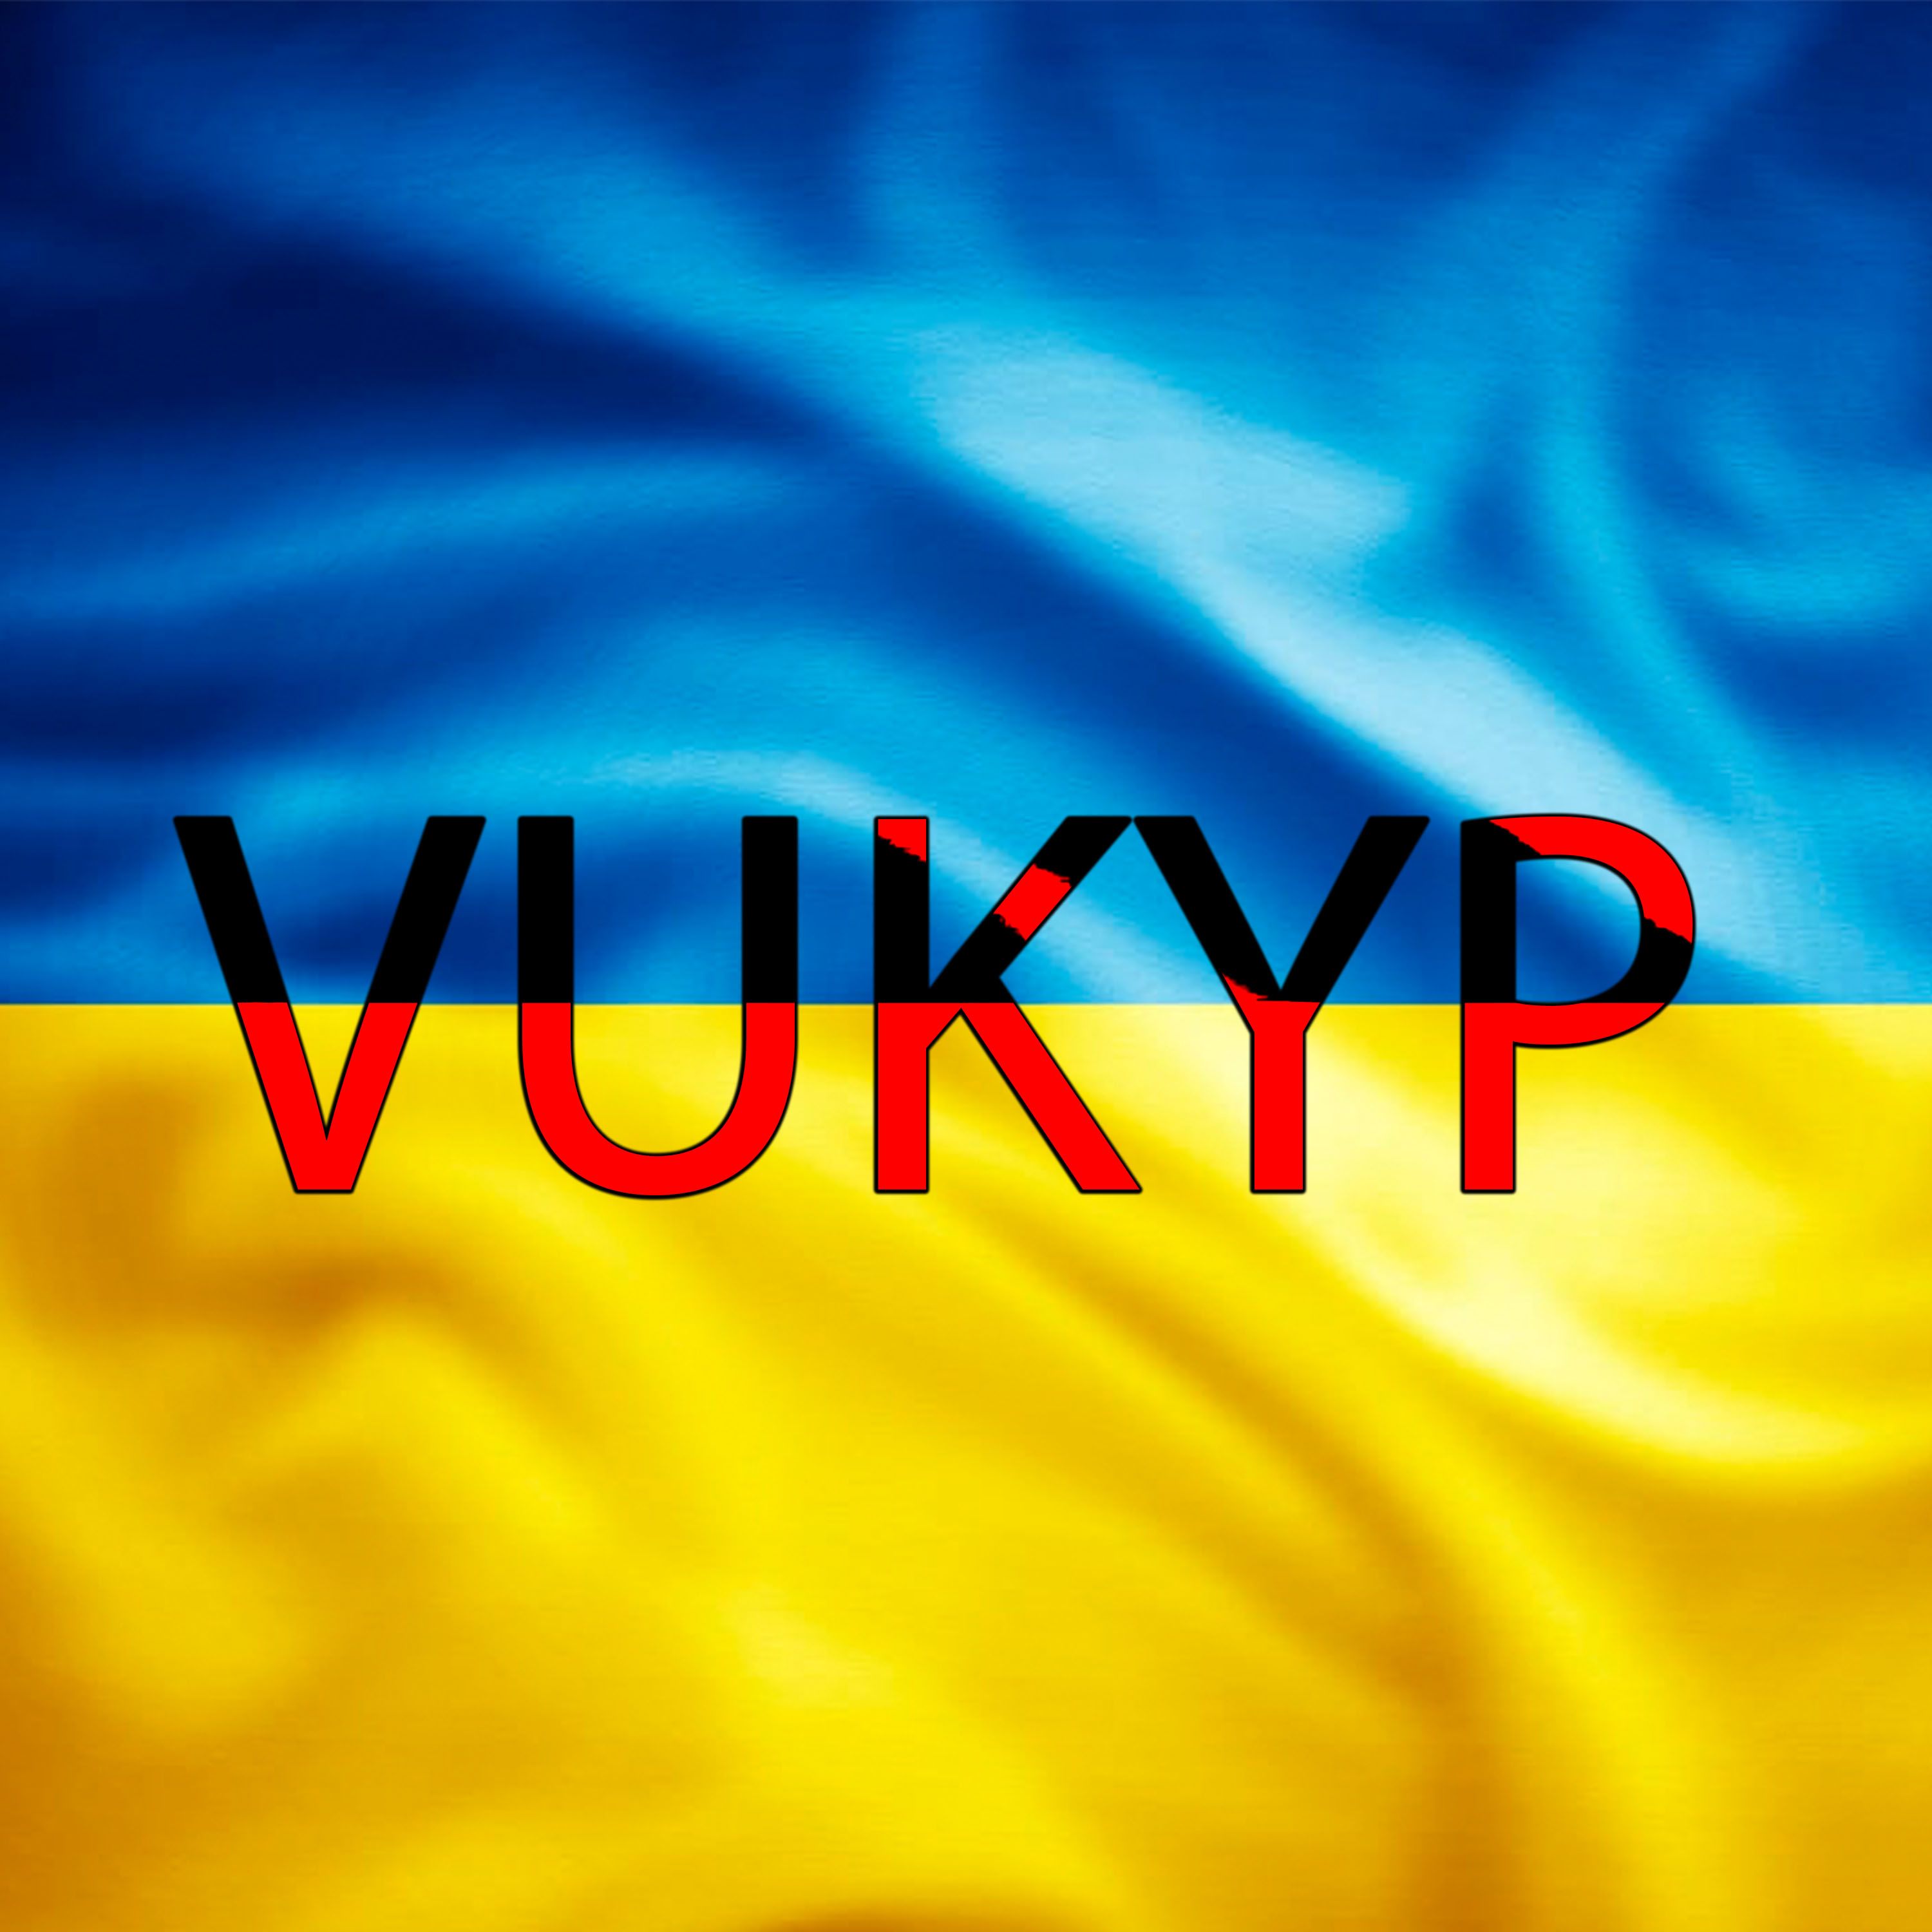 Descarca Vukyp - UKR